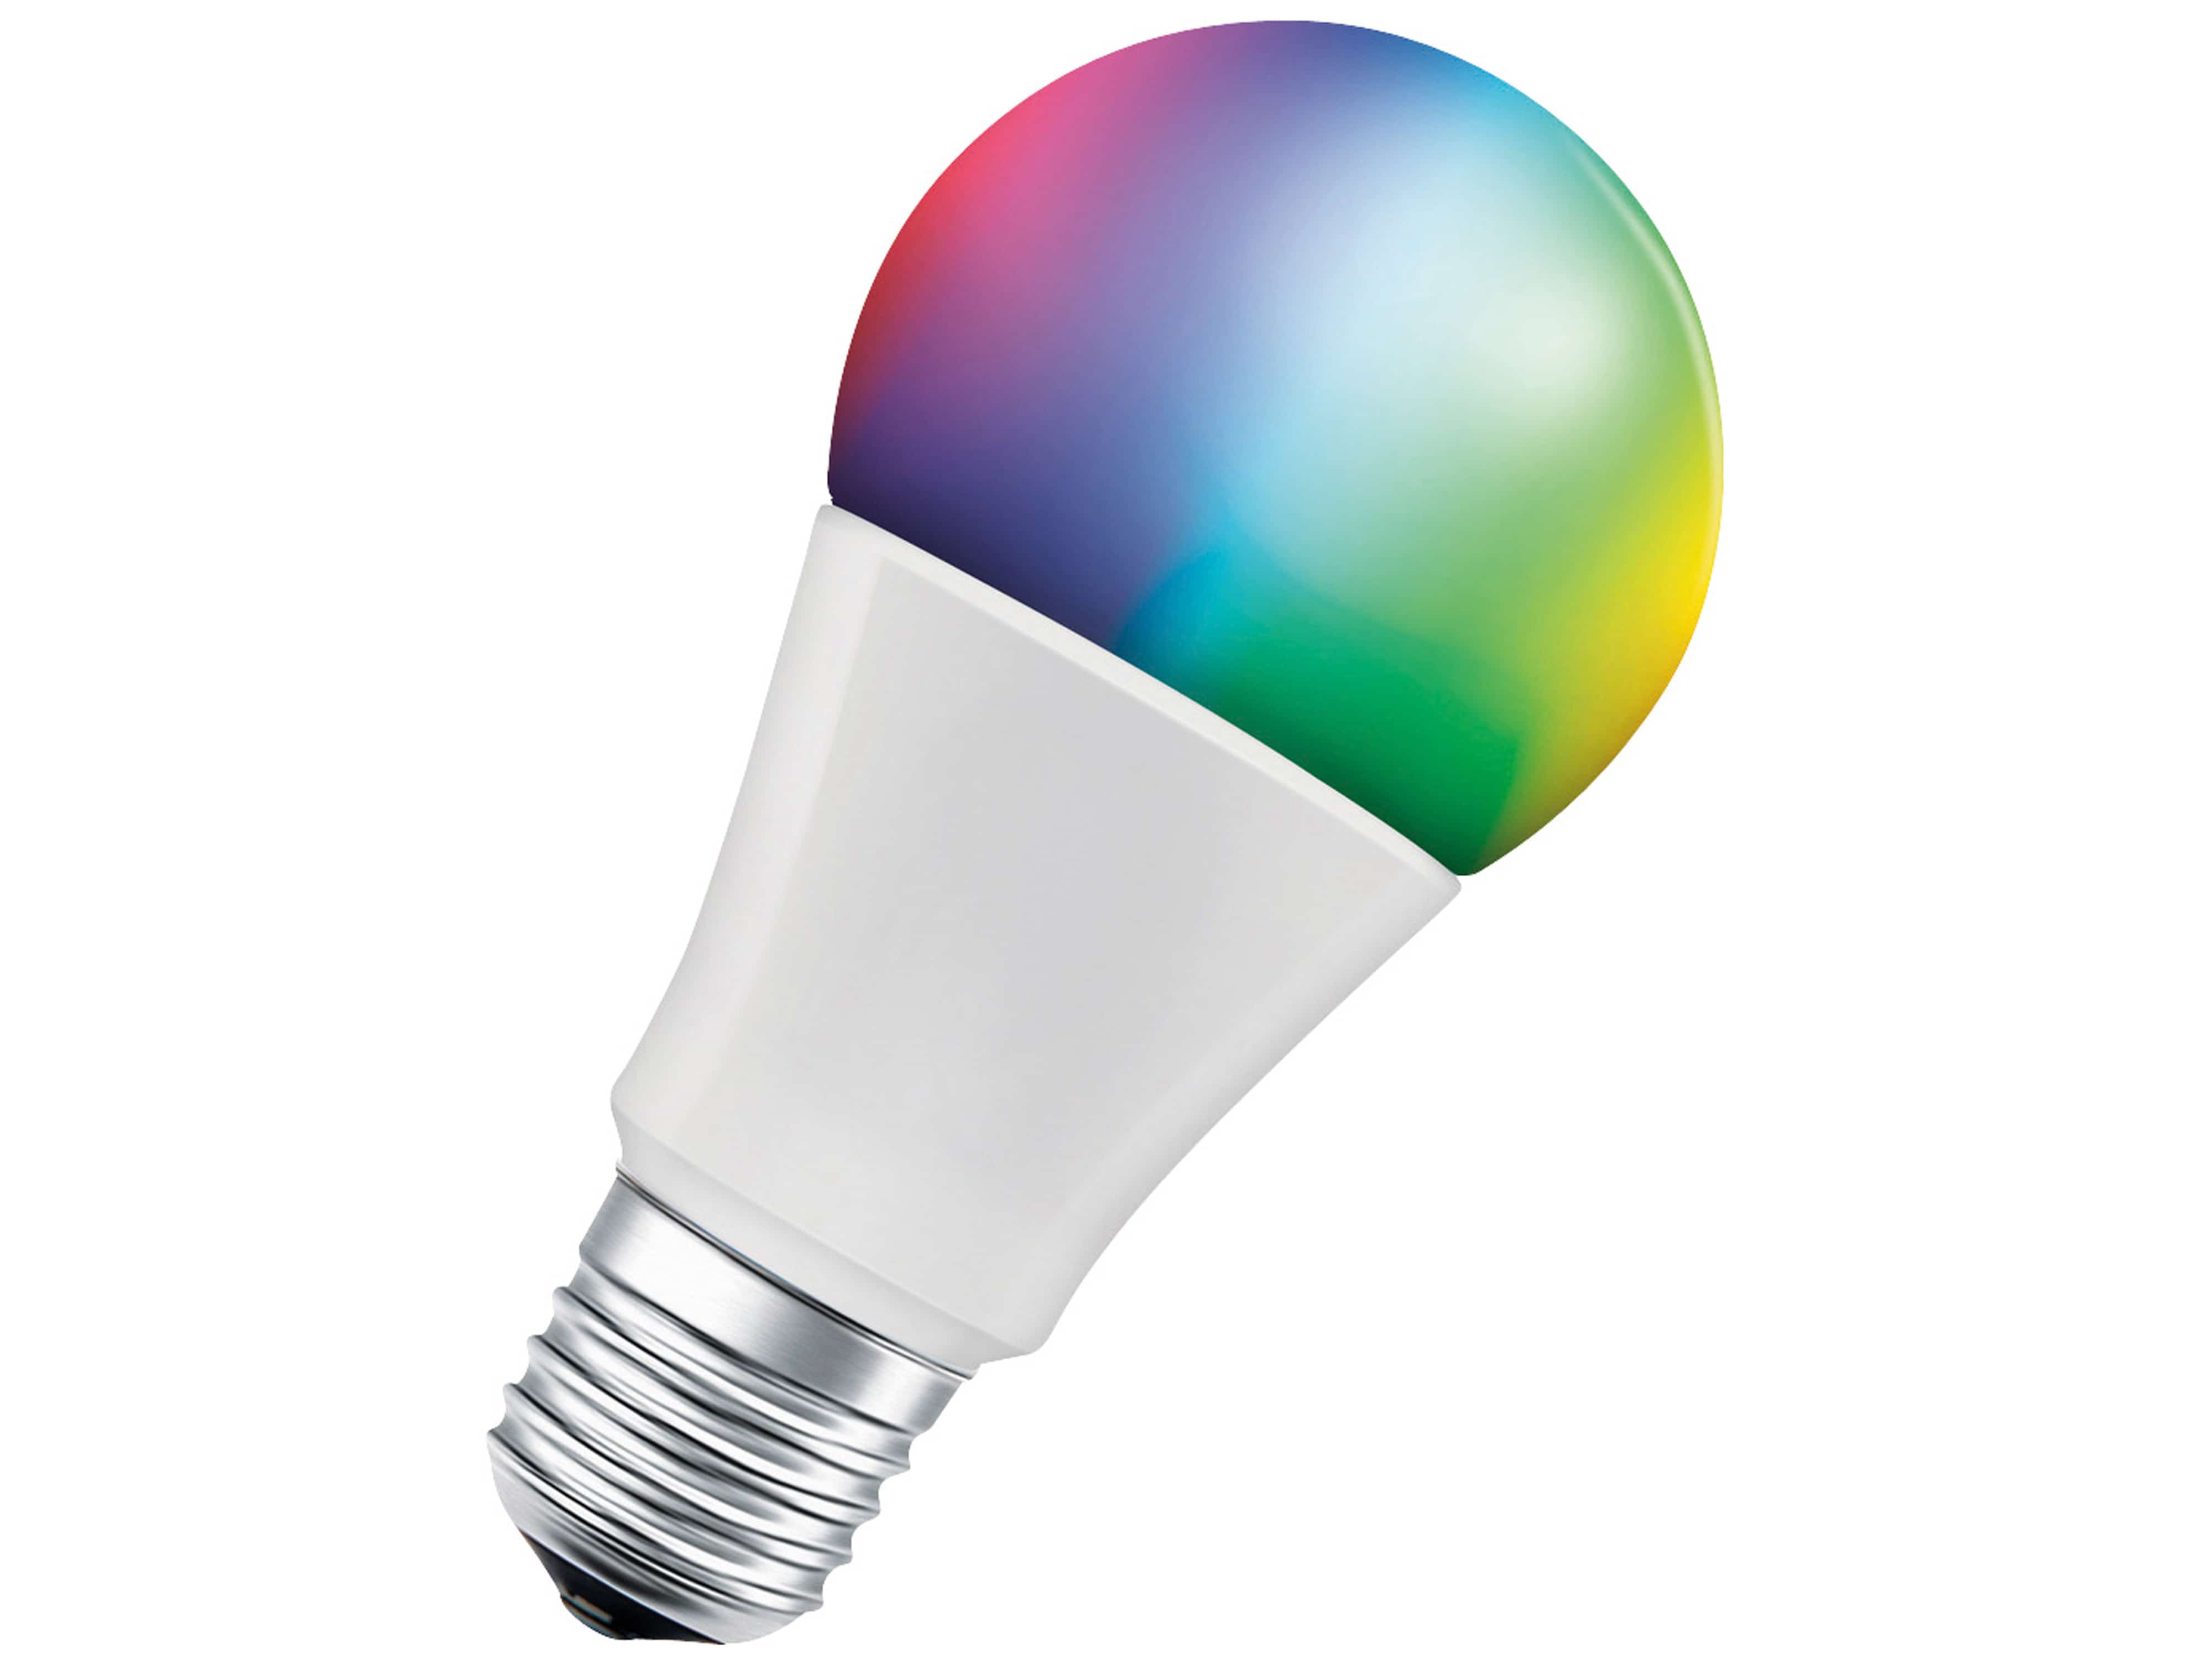 LEDVANCE LED-Lampe SMART+ WiFi Classic, A60, E27, EEK: F, 9 W, 806 lm, 2700…6500 K+RGB, Smart, 2 St